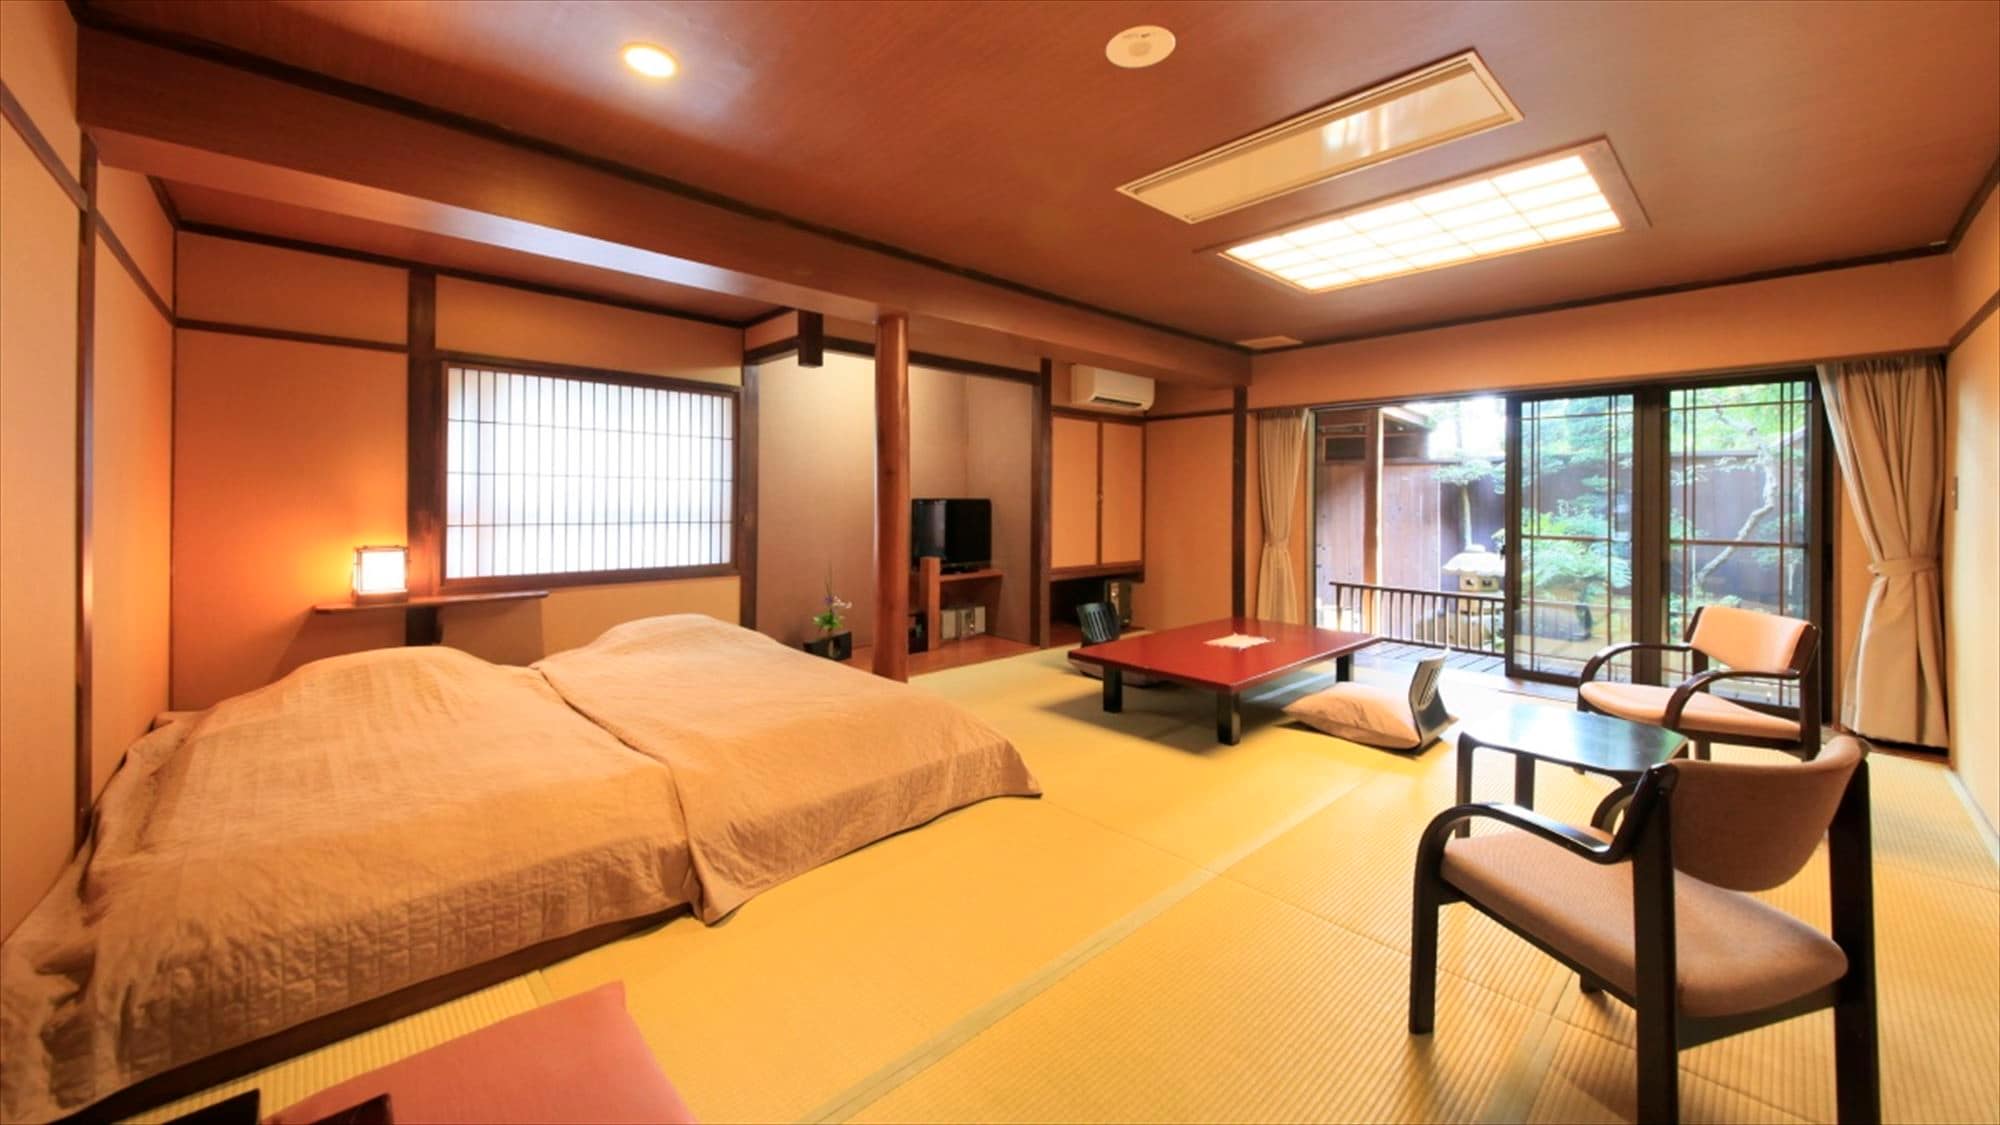 [สีส้ม] ห้องที่มีเตียงเตี้ยสไตล์ญี่ปุ่น 18 เสื่อทาทามิ